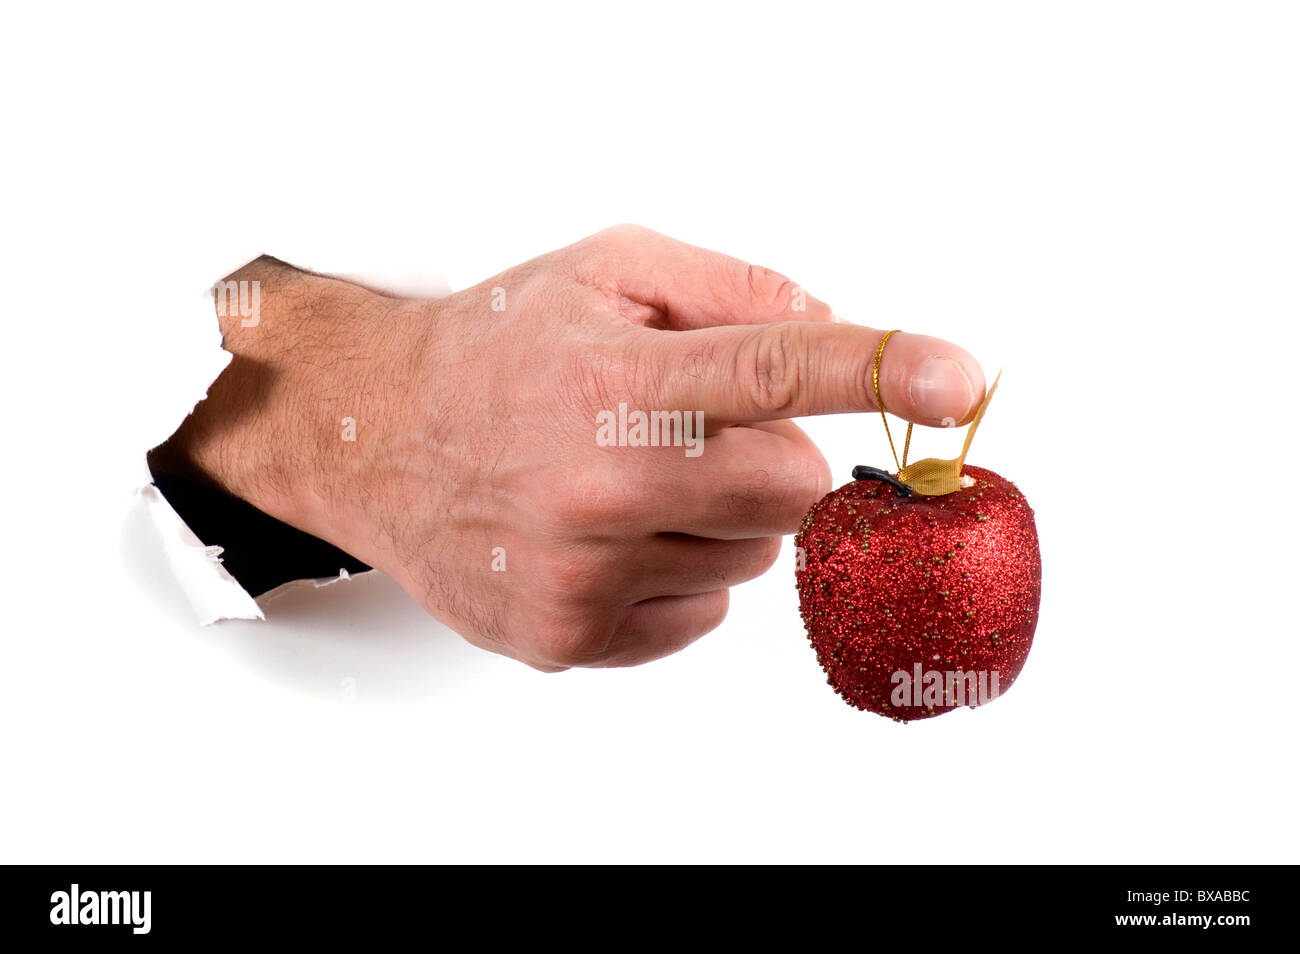 Objekt auf weiß - hand mit Weihnachtsschmuck Stockfoto